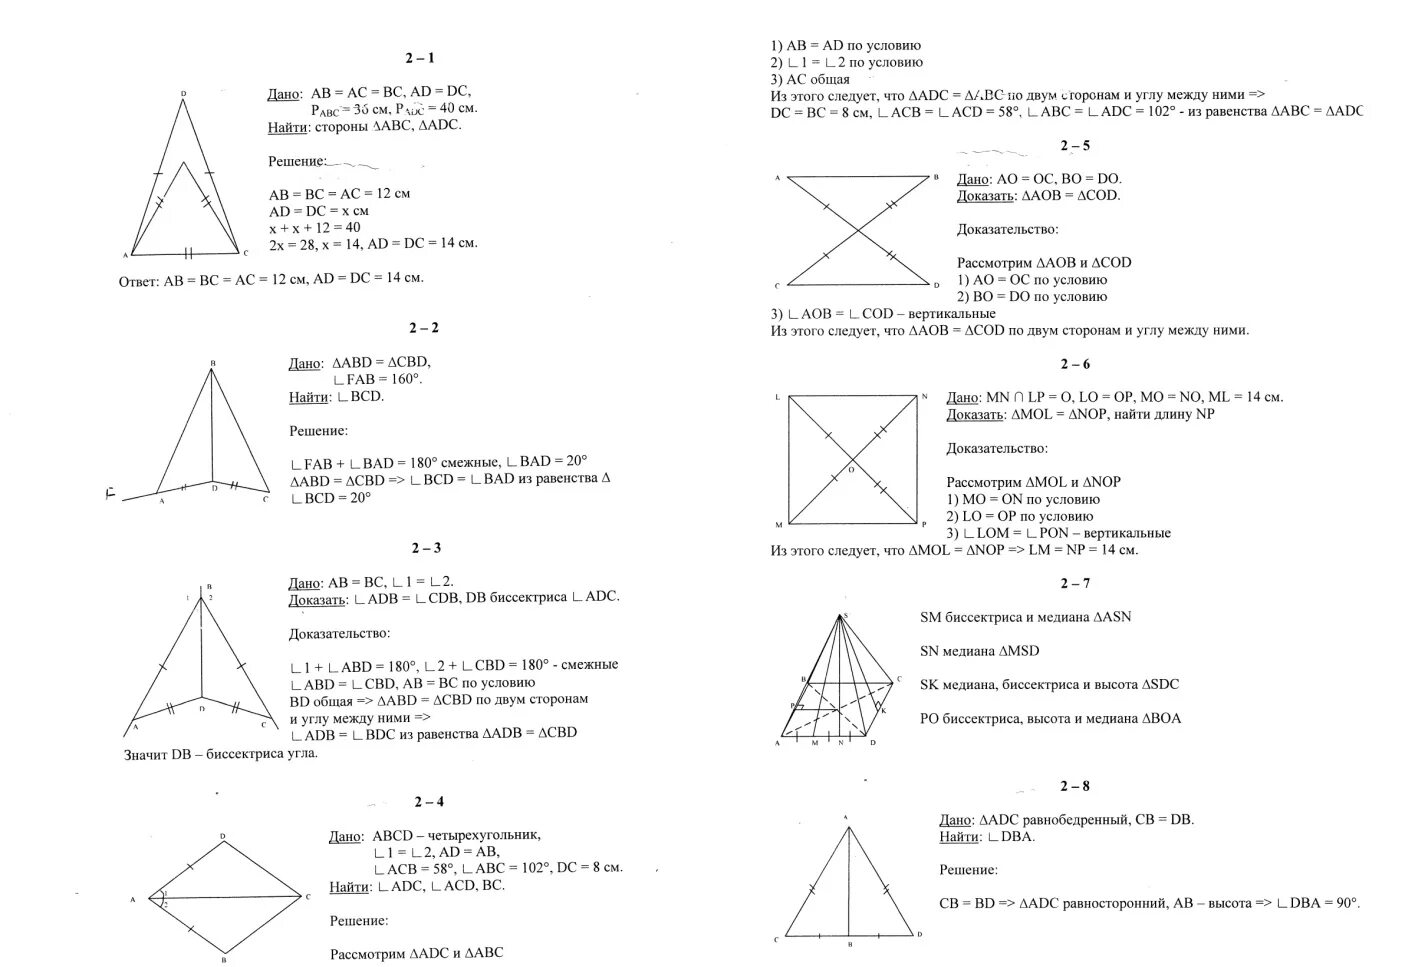 Экзамен по геометрии 7 класс билеты ответы. Переводной экзамен по геометрии 7 класс ответы. Геометрия 7 класс переводной экзамен. Экзаменационные билеты 7 класс геометрия. Билеты переводного экзамена по геометрии 7 класс.